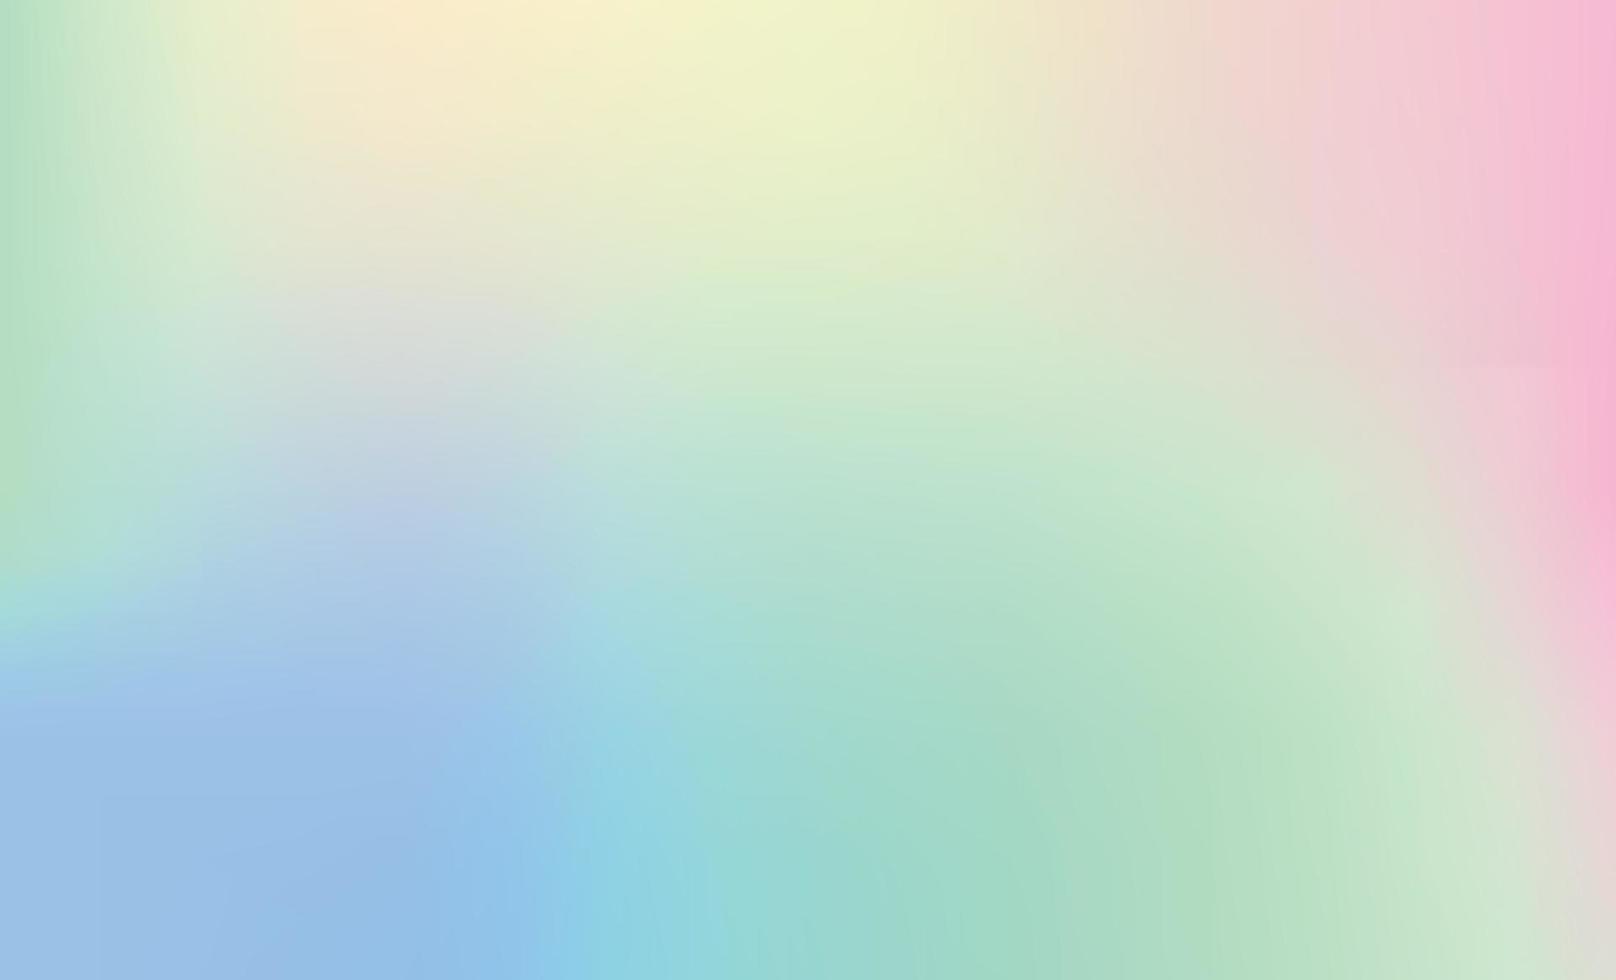 fond de vecteur de gradation de couleur, disposition horizontale. conception abstraite de toile de fond à effet pastel doux, style futuriste tendance à saturation dramatique. mélange de couleurs bleu, vert, crème, maille dégradée rose.